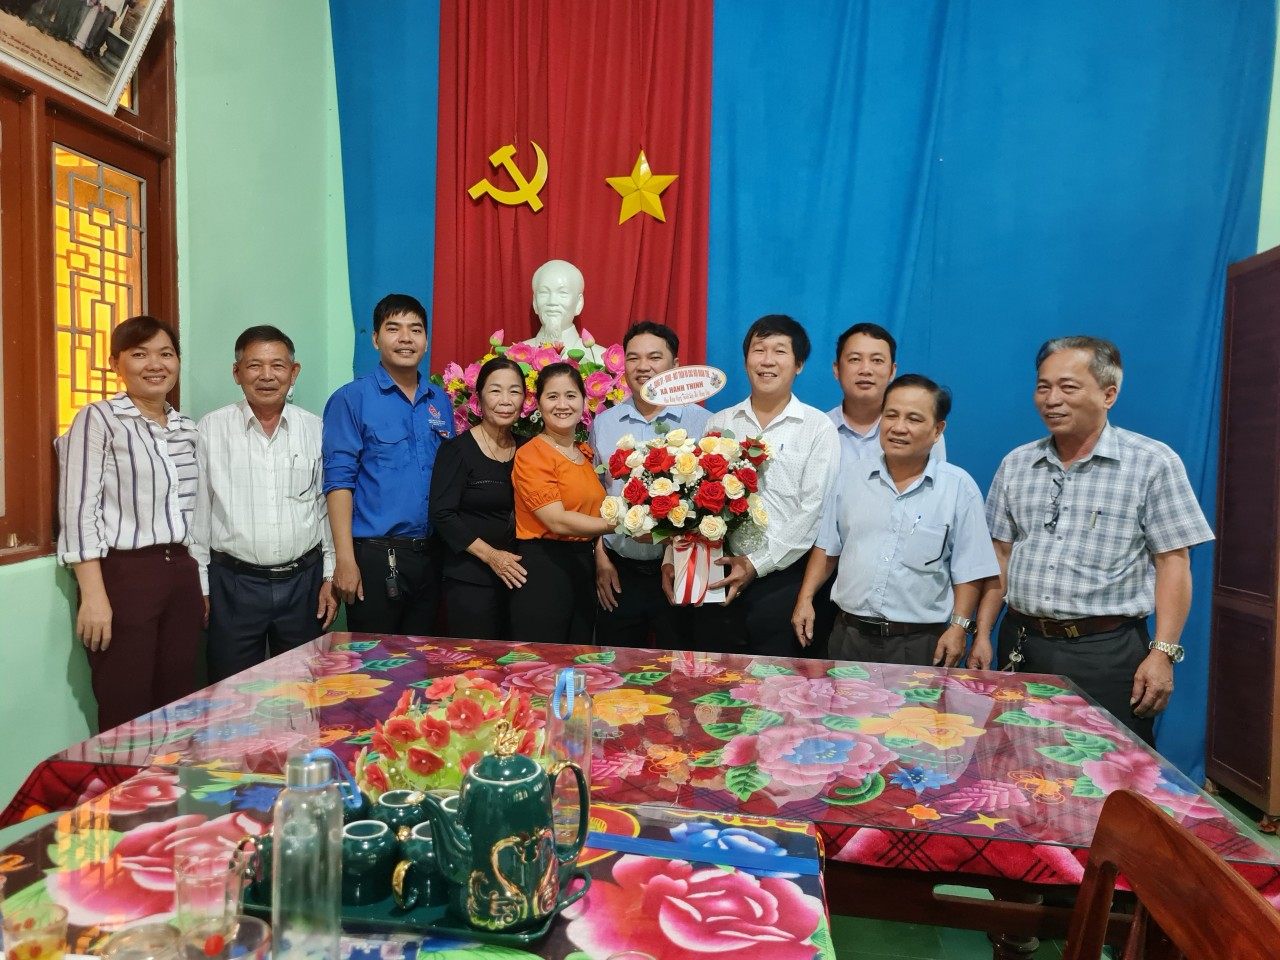 Hội nông dân xã Hành Thịnh tổ chức kỷ niệm 93 năm Ngày thành lập Hội nông dân Việt Nam (14/10/1930 - 14/10/2023)